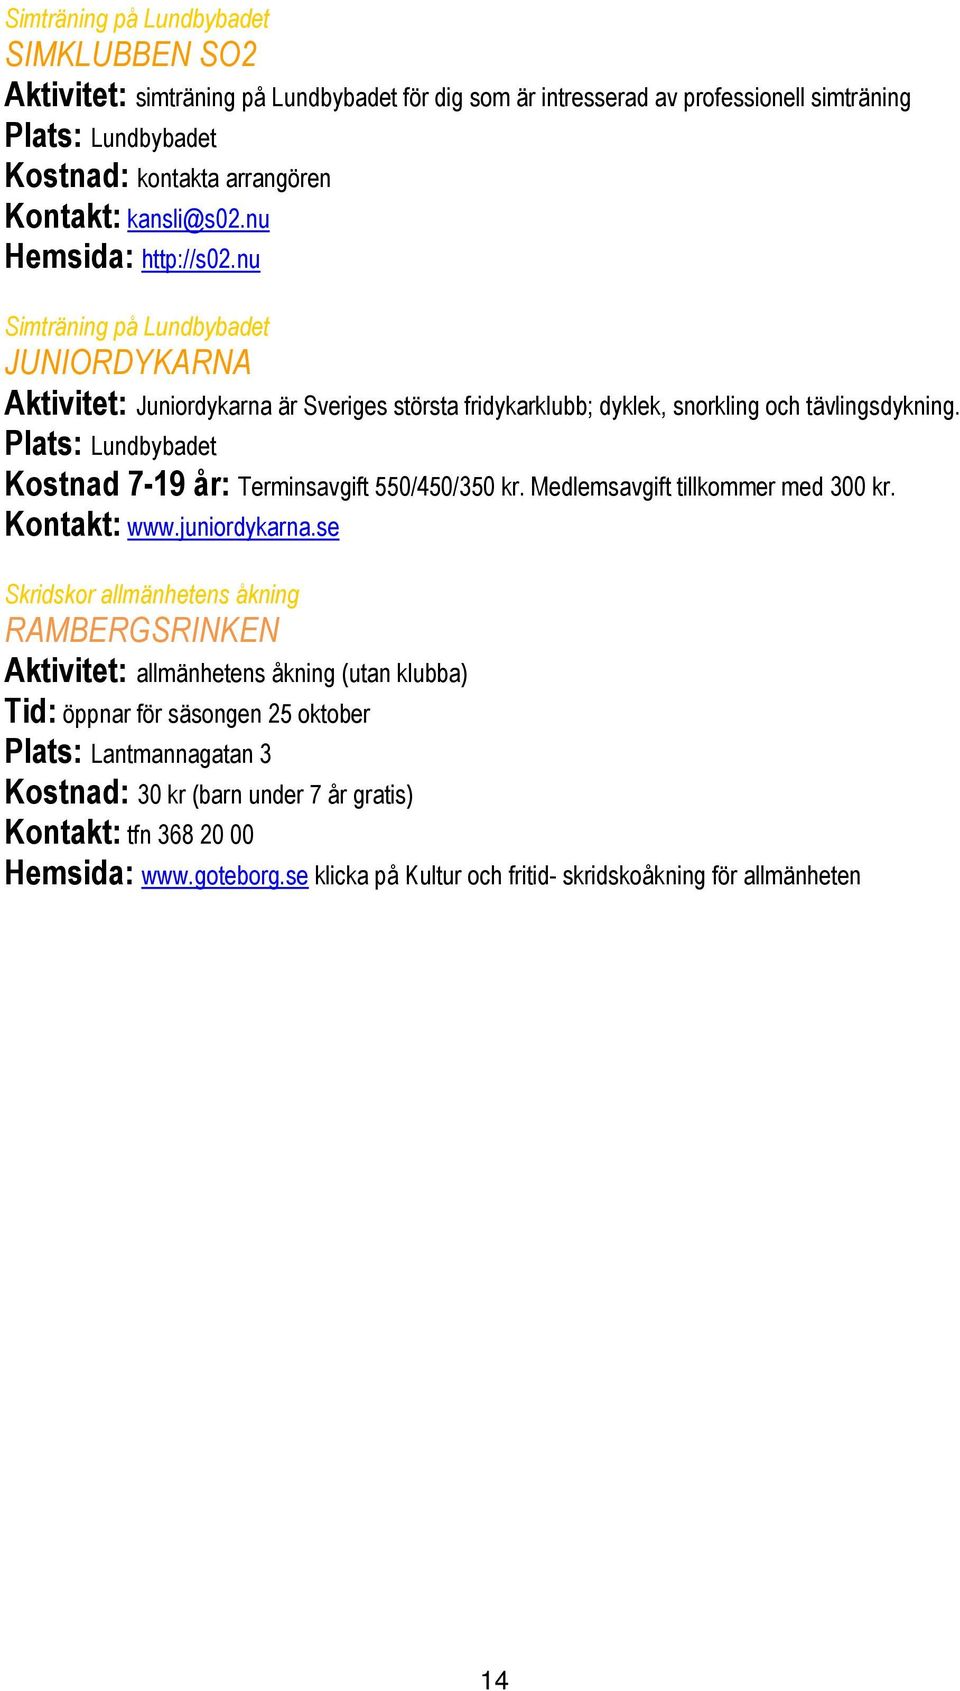 Plats: Lundbybadet Kostnad 7-19 år: Terminsavgift 550/450/350 kr. Medlemsavgift tillkommer med 300 kr. Kontakt: www.juniordykarna.